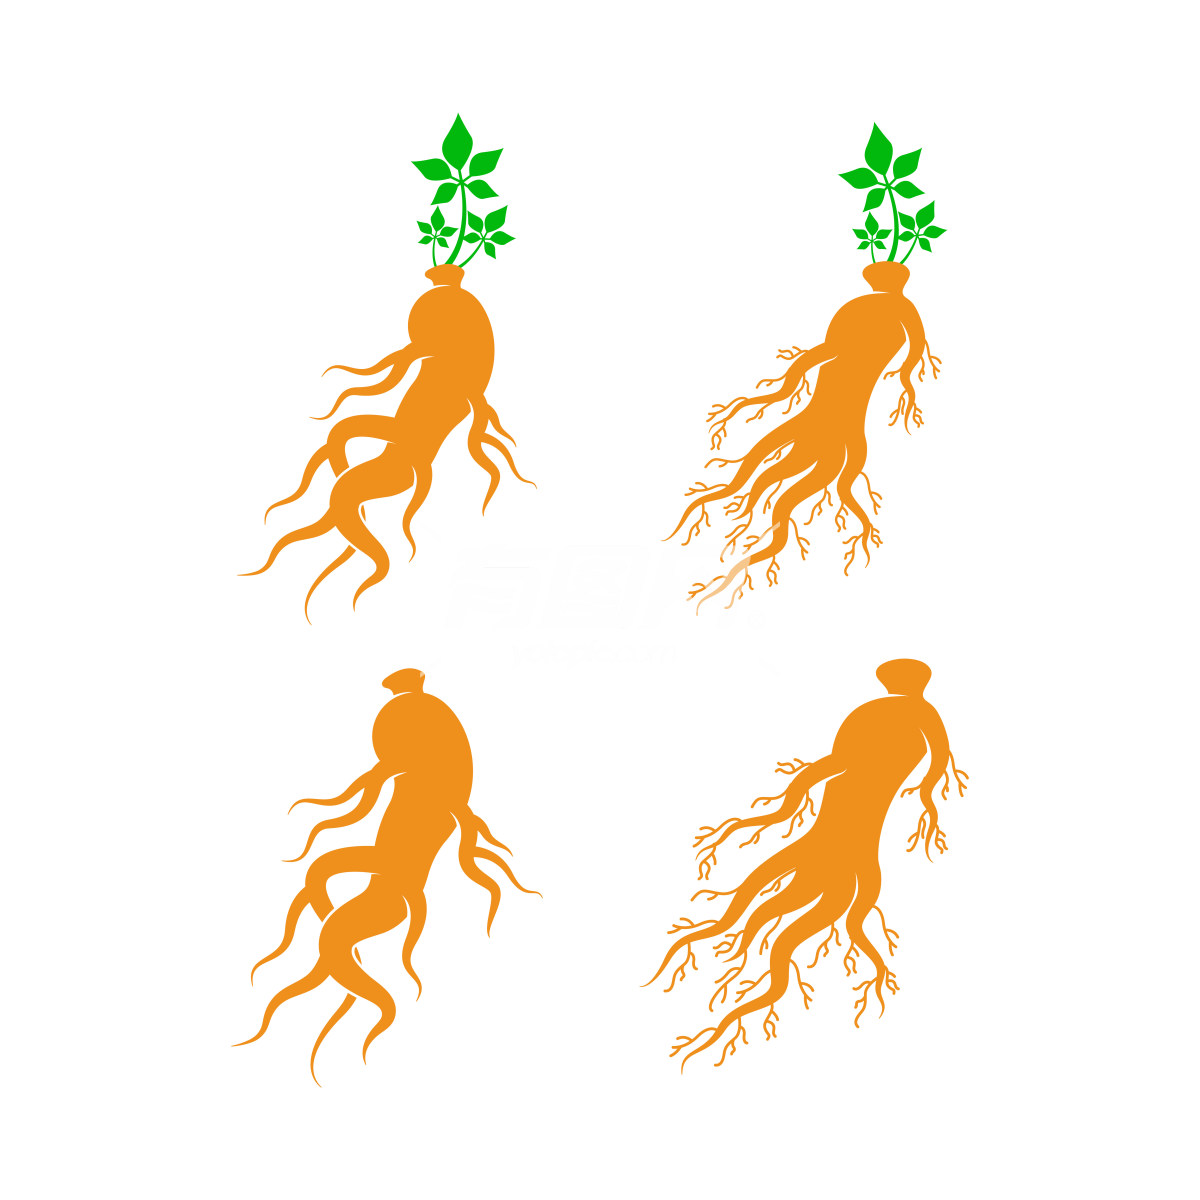 根茎类植物的图形